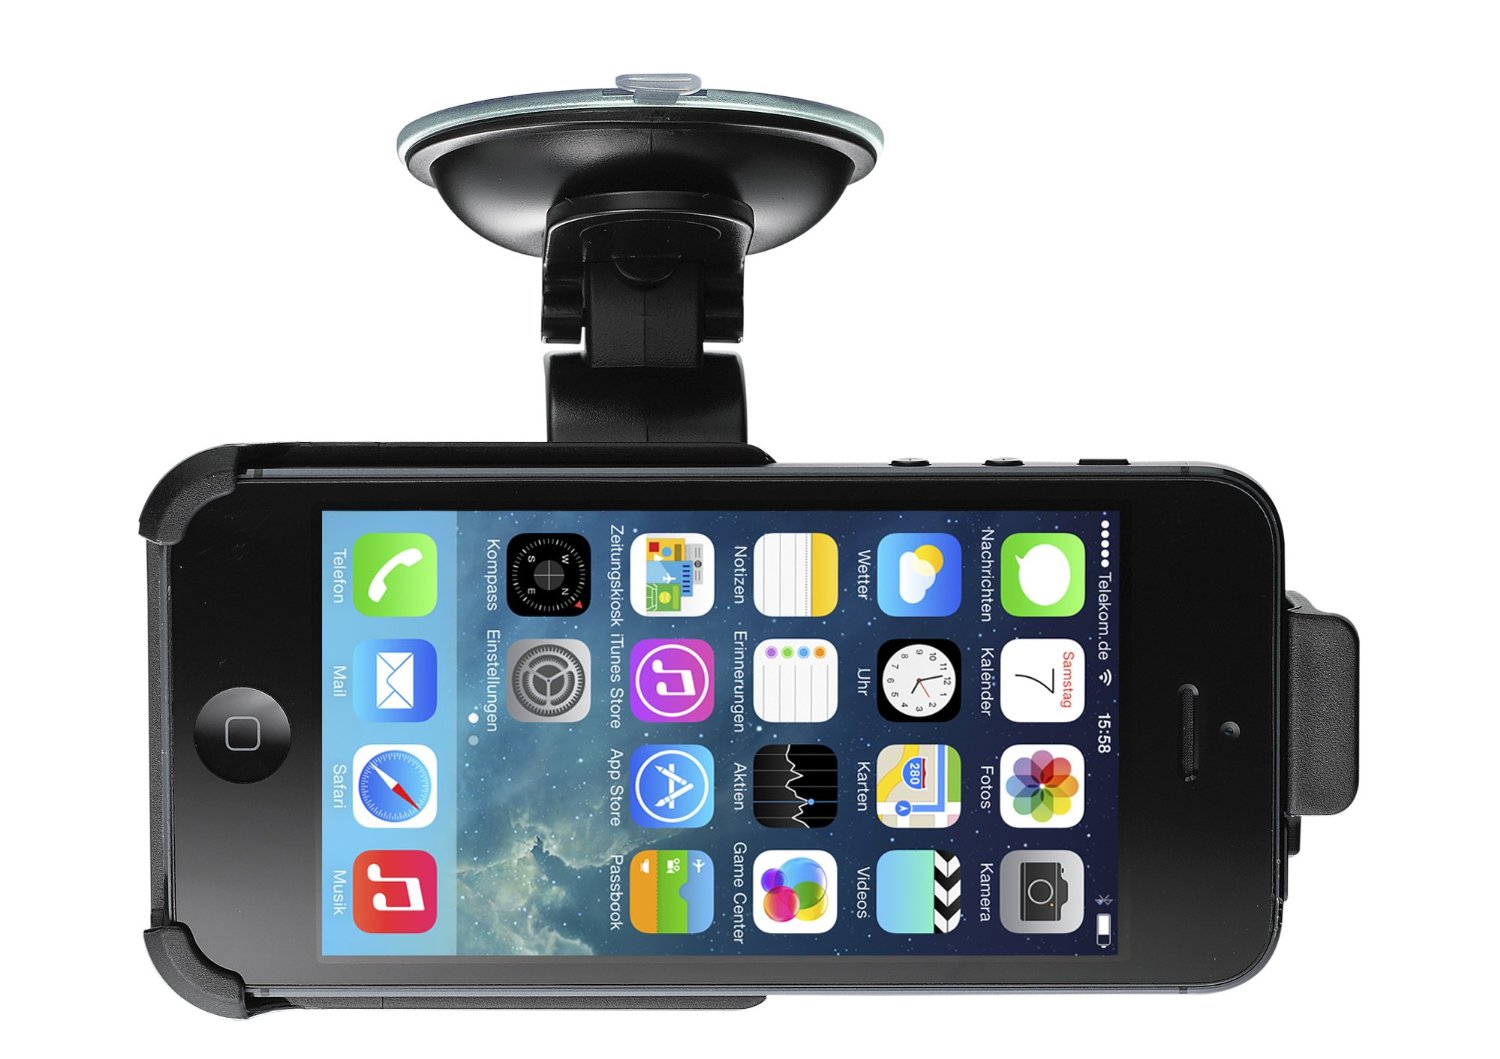 Autohalterung für das iPhone: Günstiges Einsteiger-Modell für 10 Euro